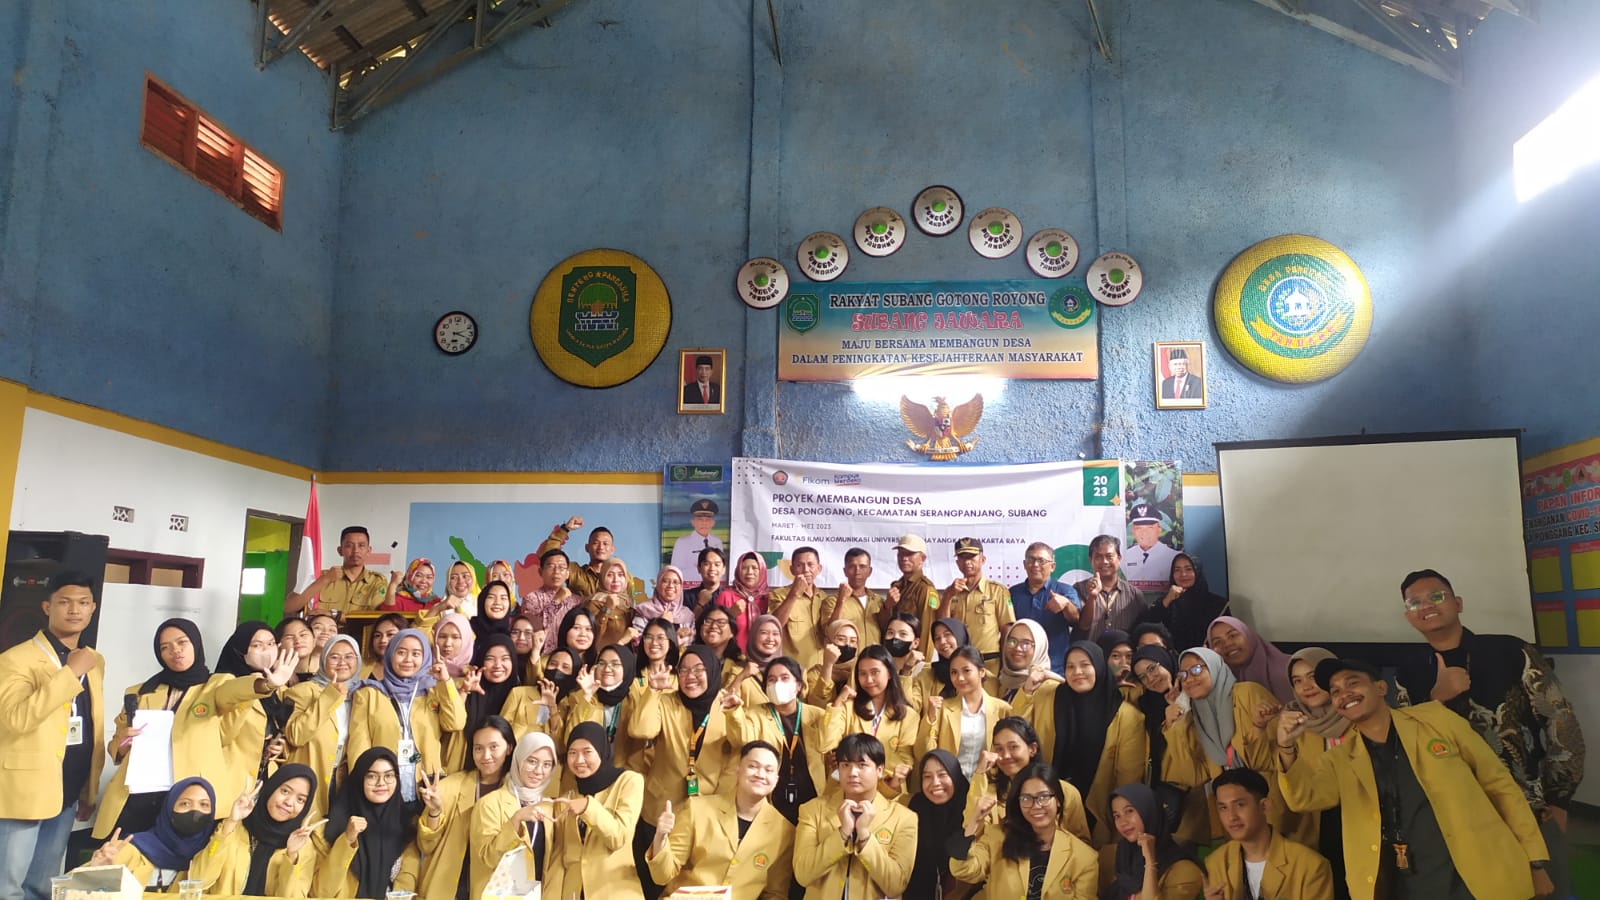 Mahasiswa Fikom melaksanakan Proyek Membangun Desa (PMD) di Subang, Jawa Barat